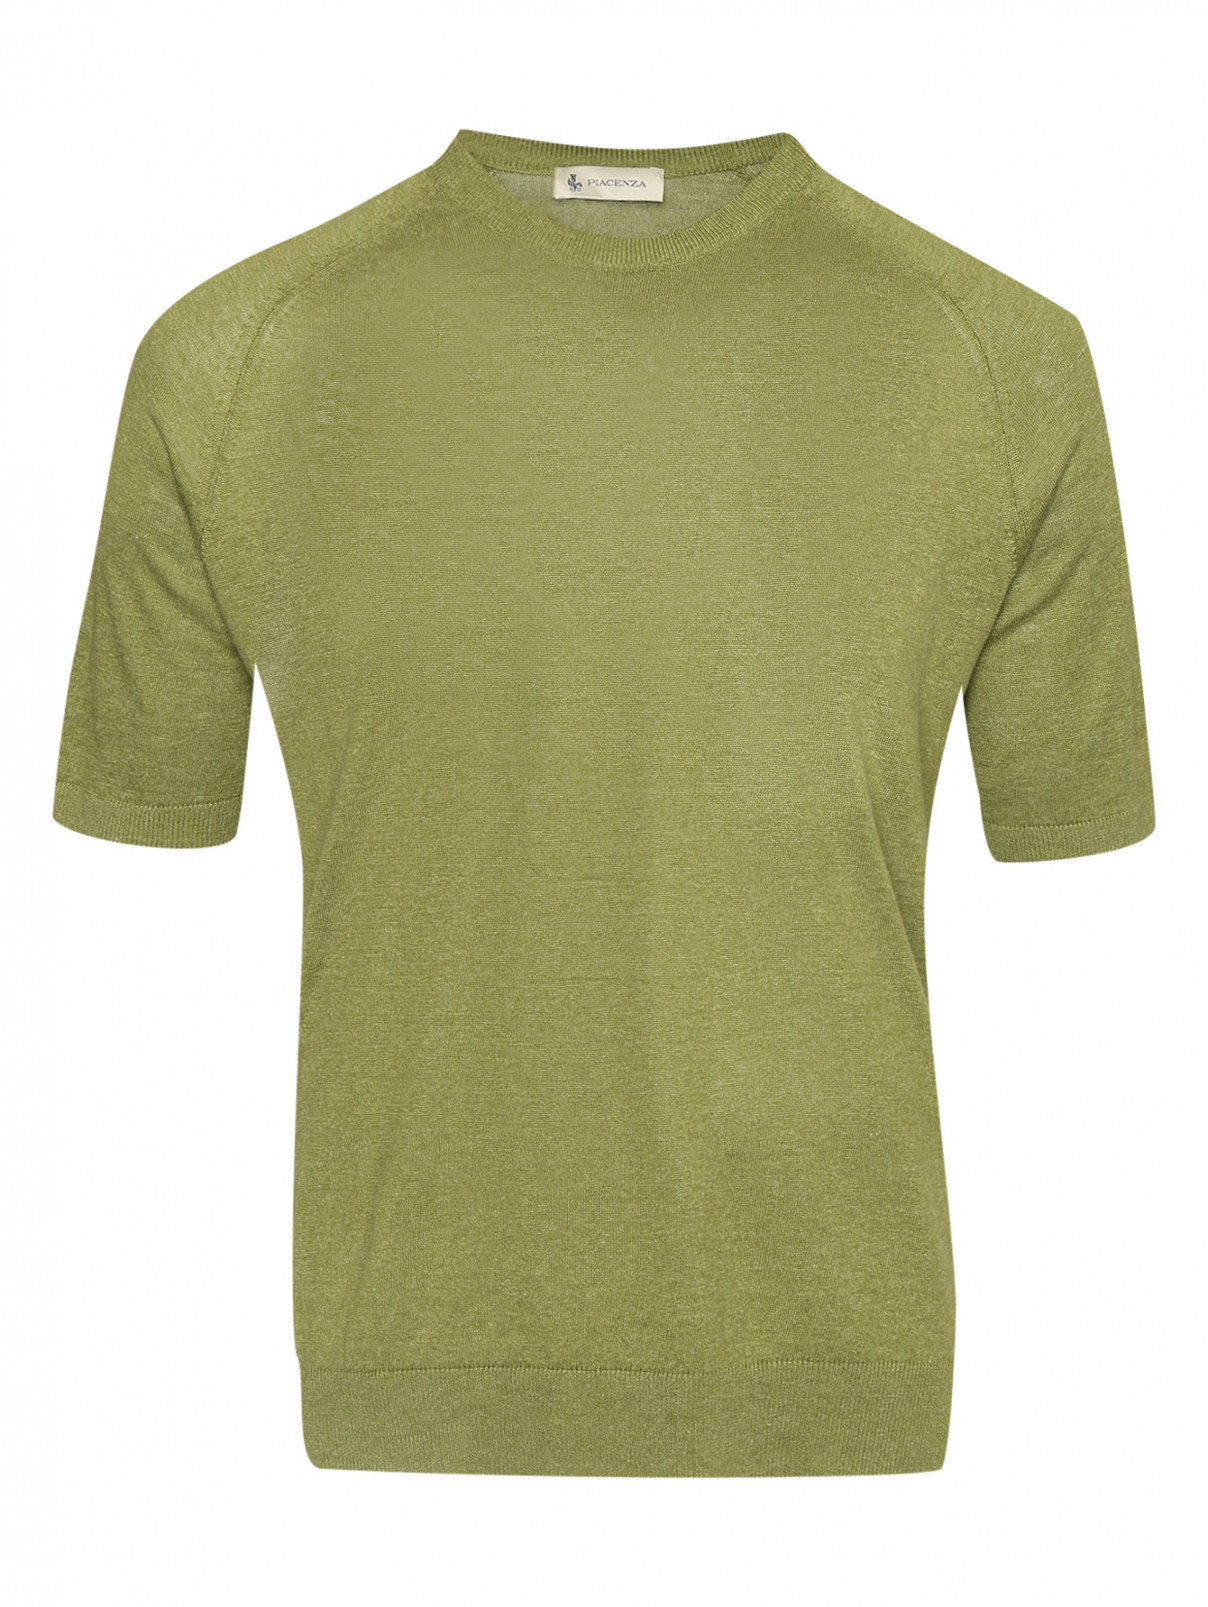 Джемпер из шелка и льна с короткими рукавами Piacenza Cashmere  –  Общий вид  – Цвет:  Зеленый